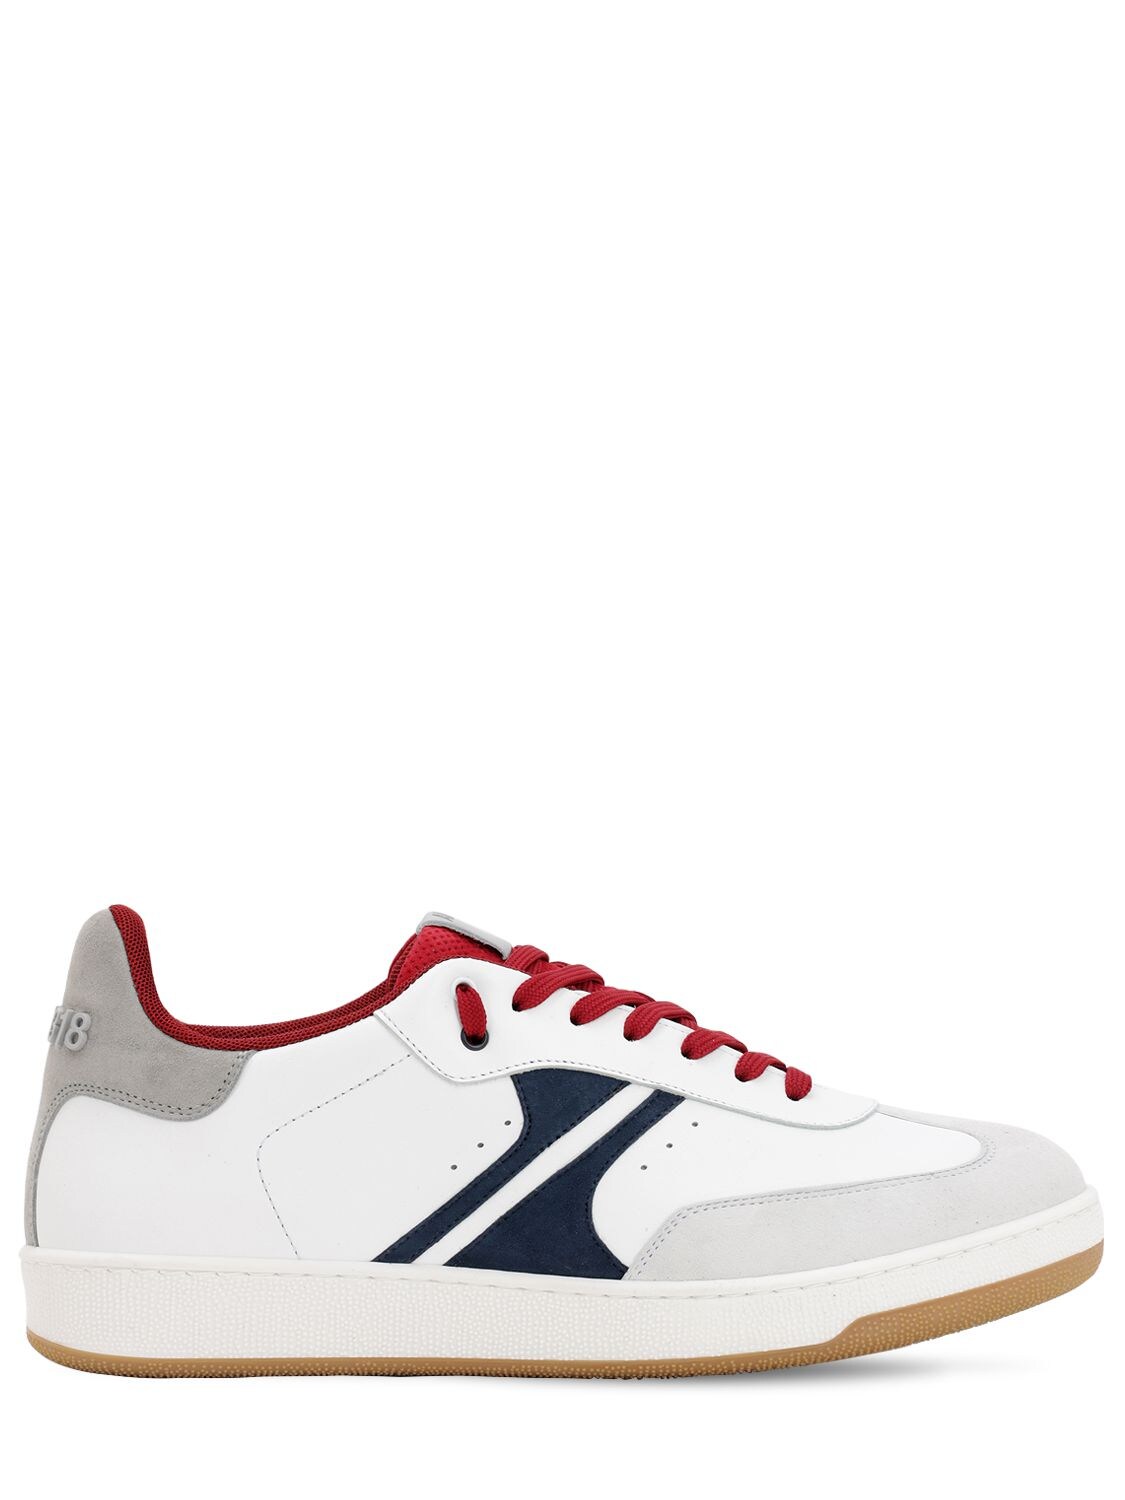 Am318 Arrow Sneakers In White,scarlet